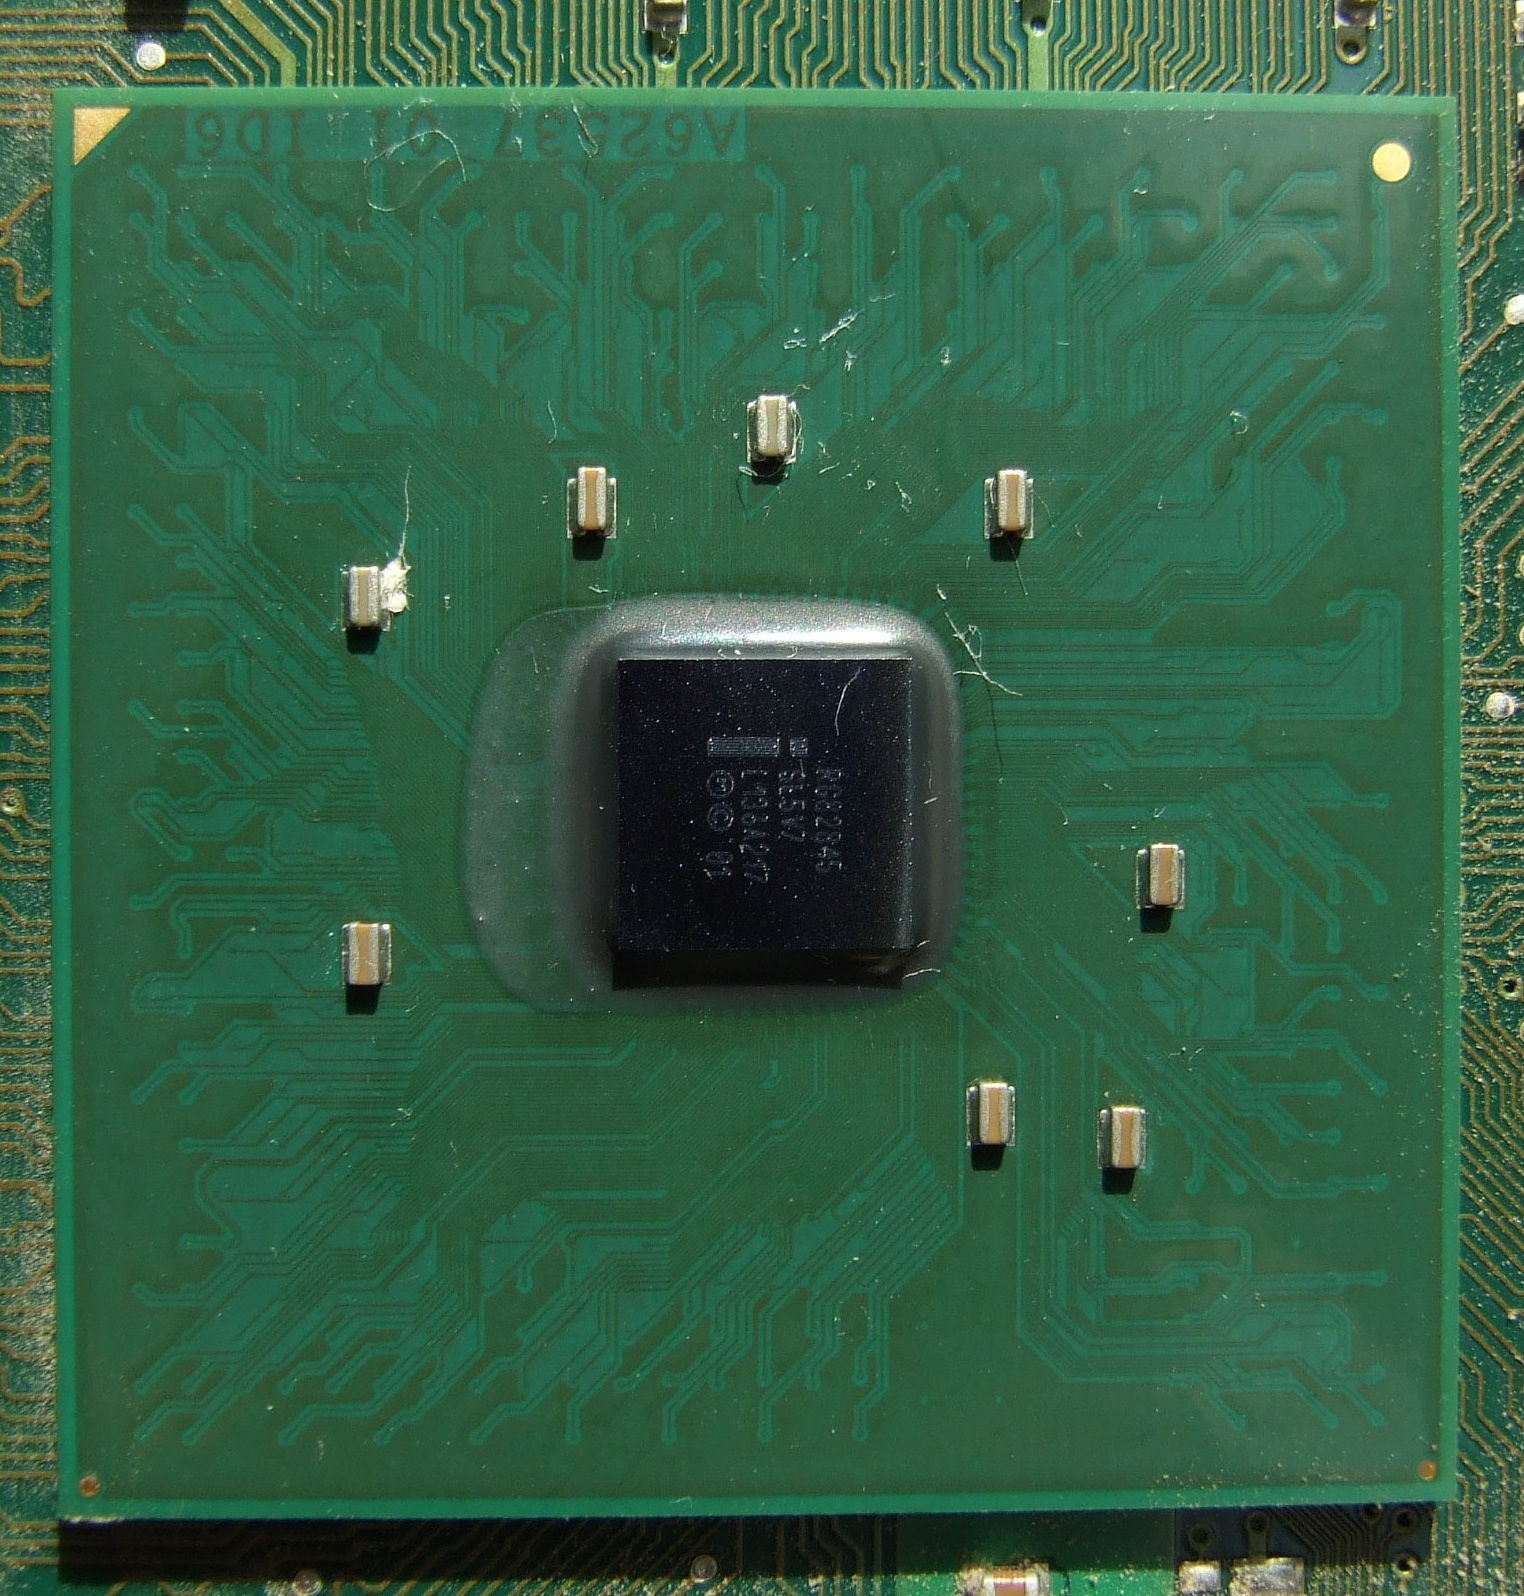 Intel 845 - Wikipedia